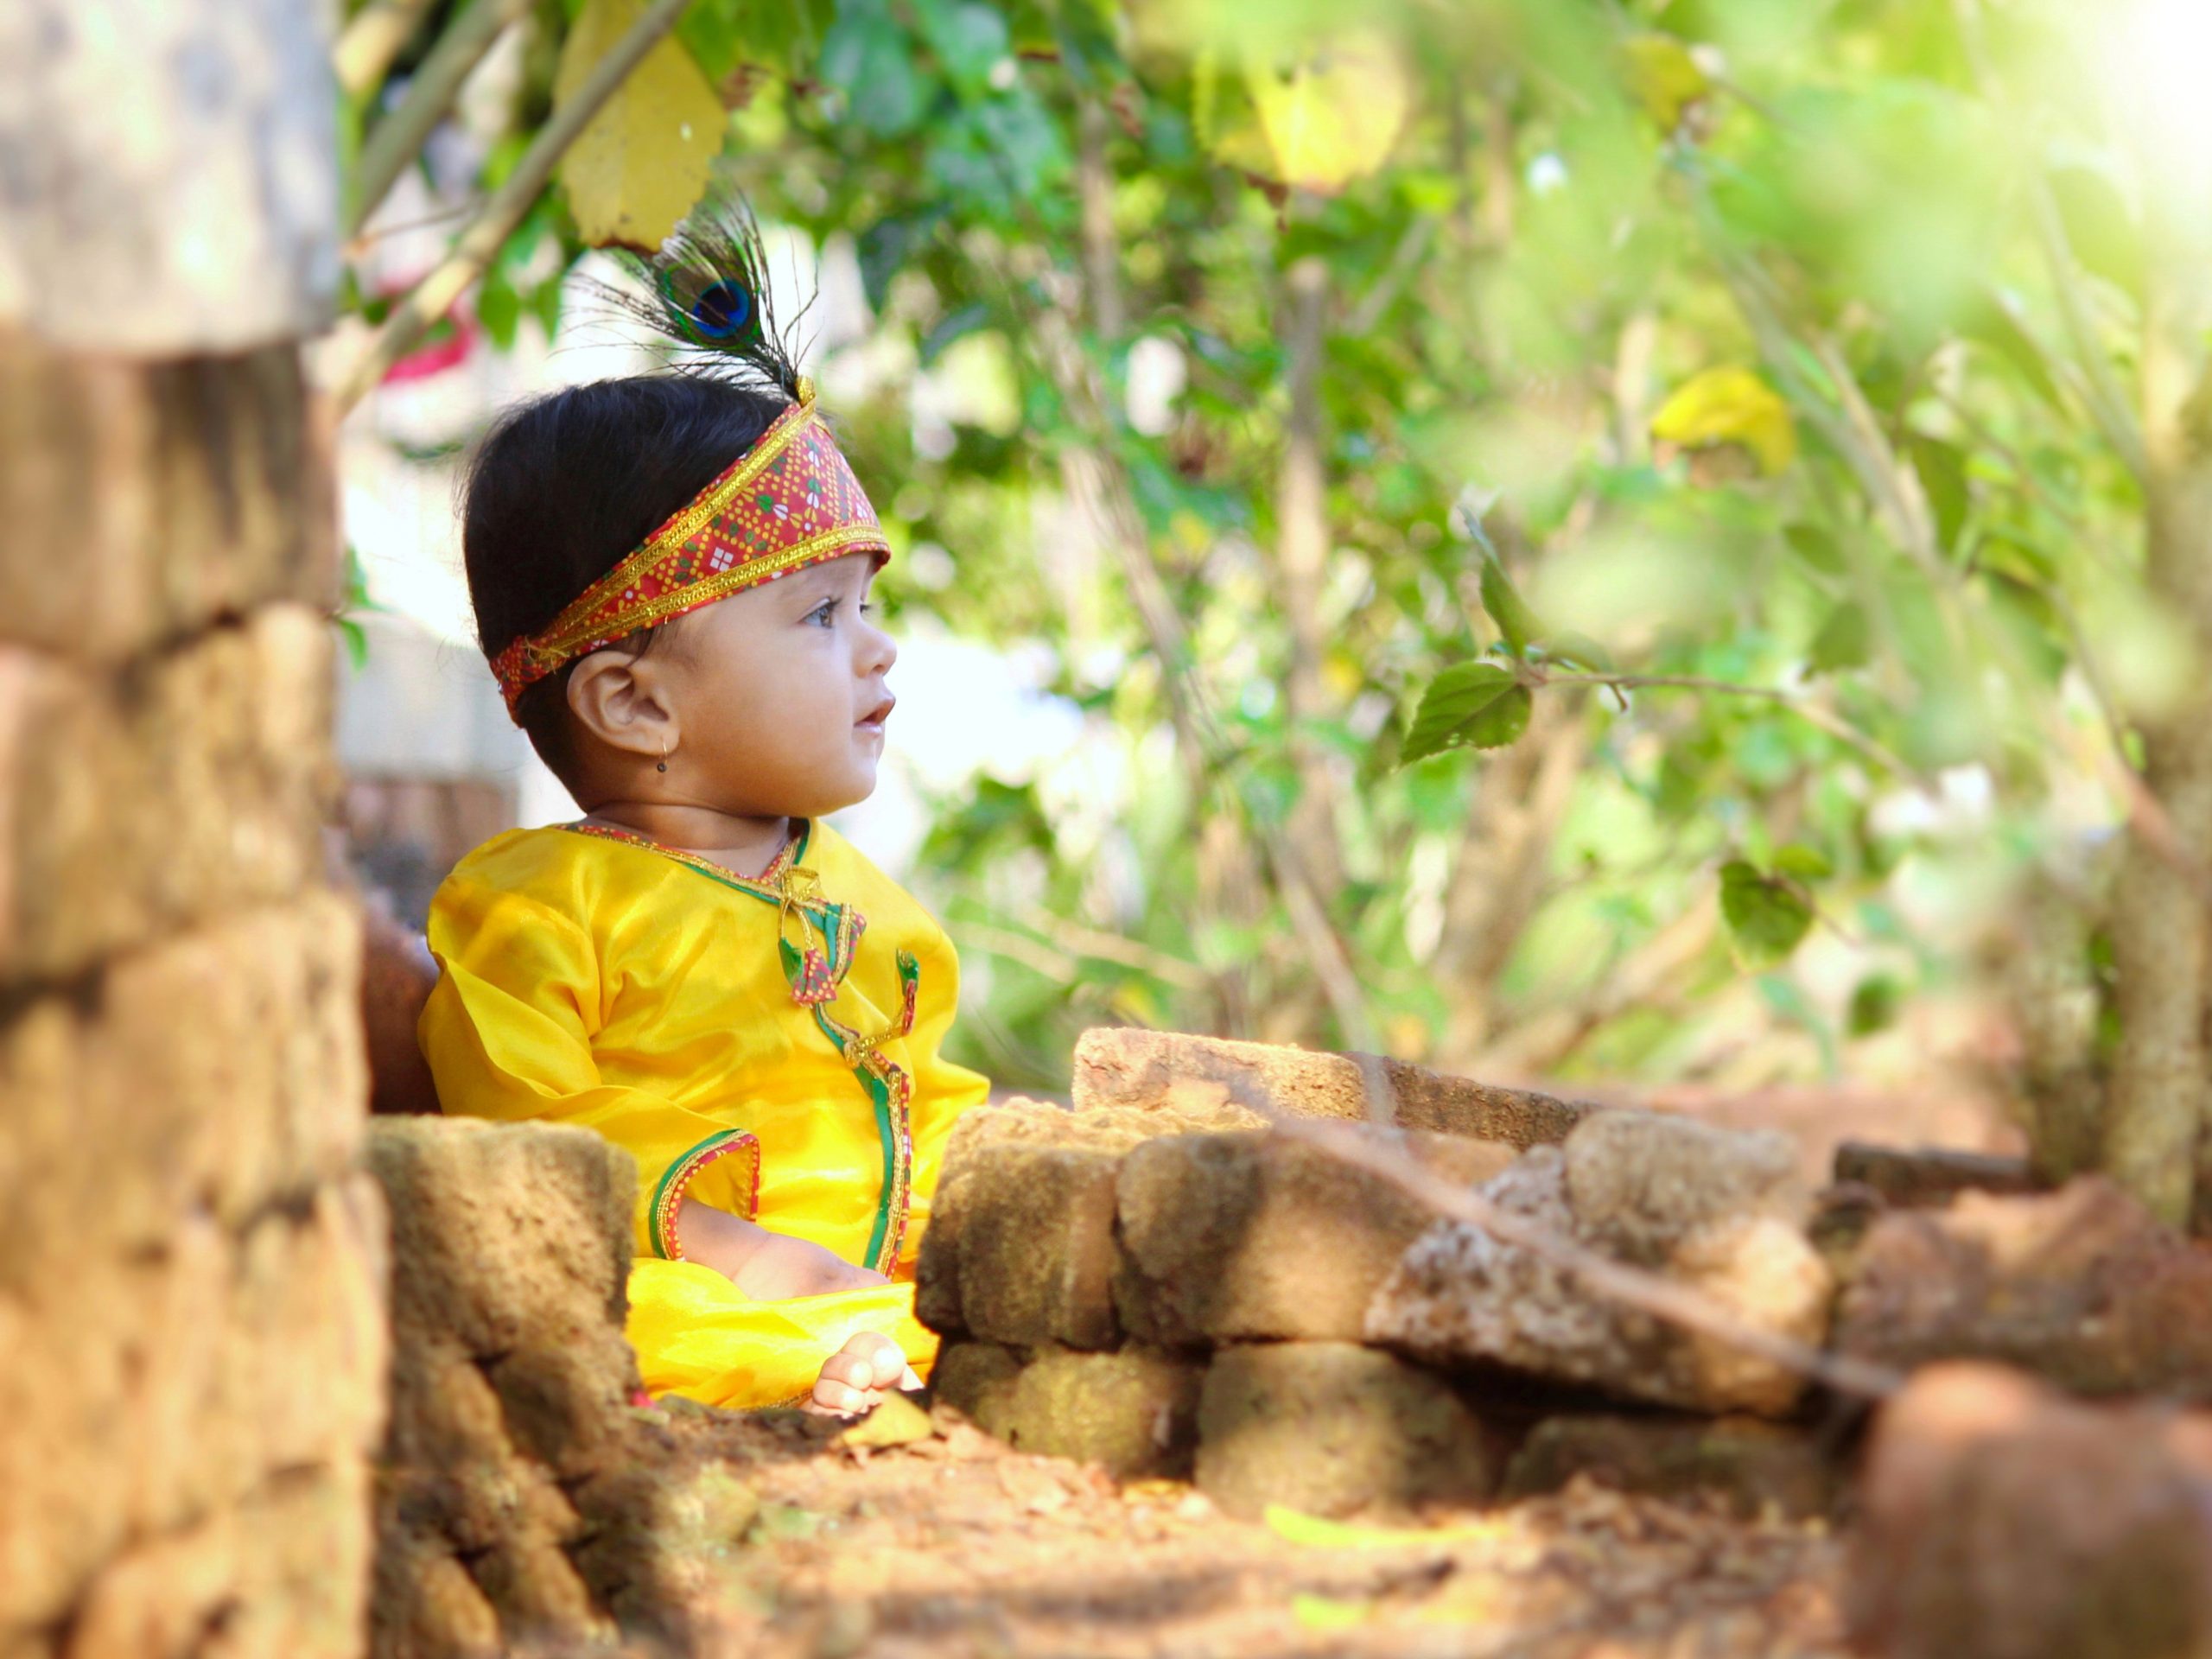 Little Kid in Krishna outfit